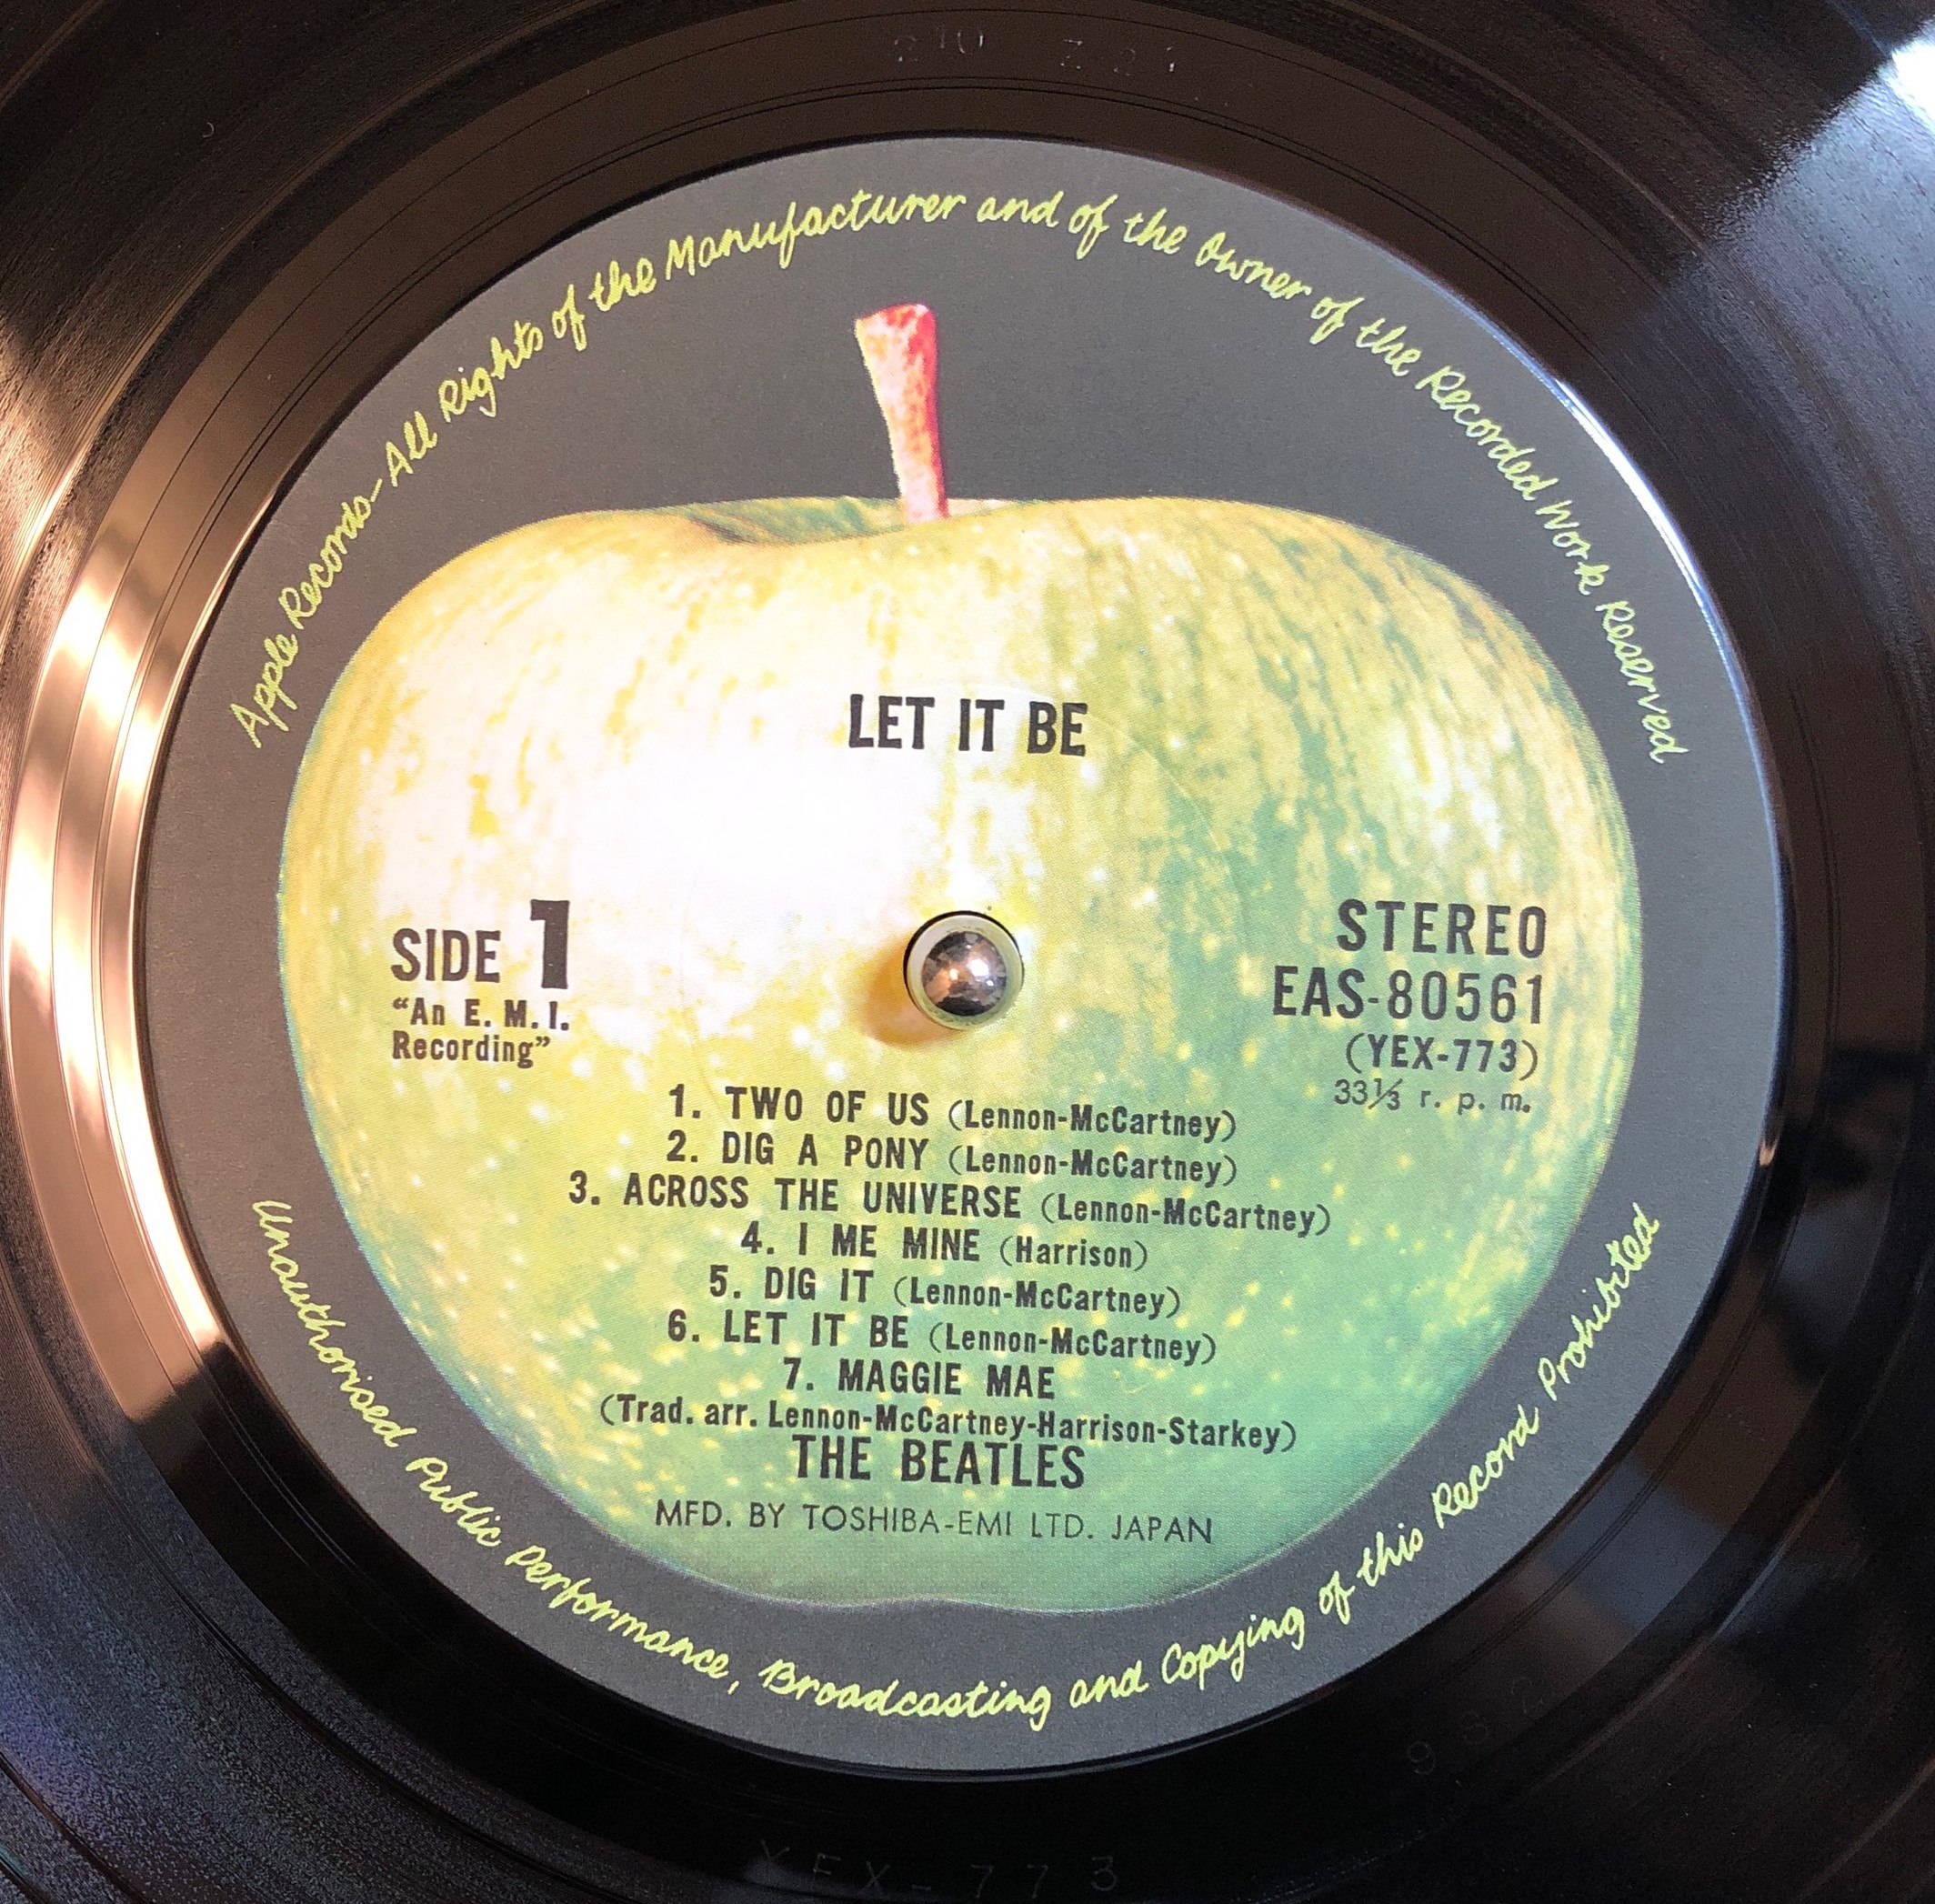 The Beatles ‎– Let It Be | 中古レコード通販・買取のアカル・レコーズ